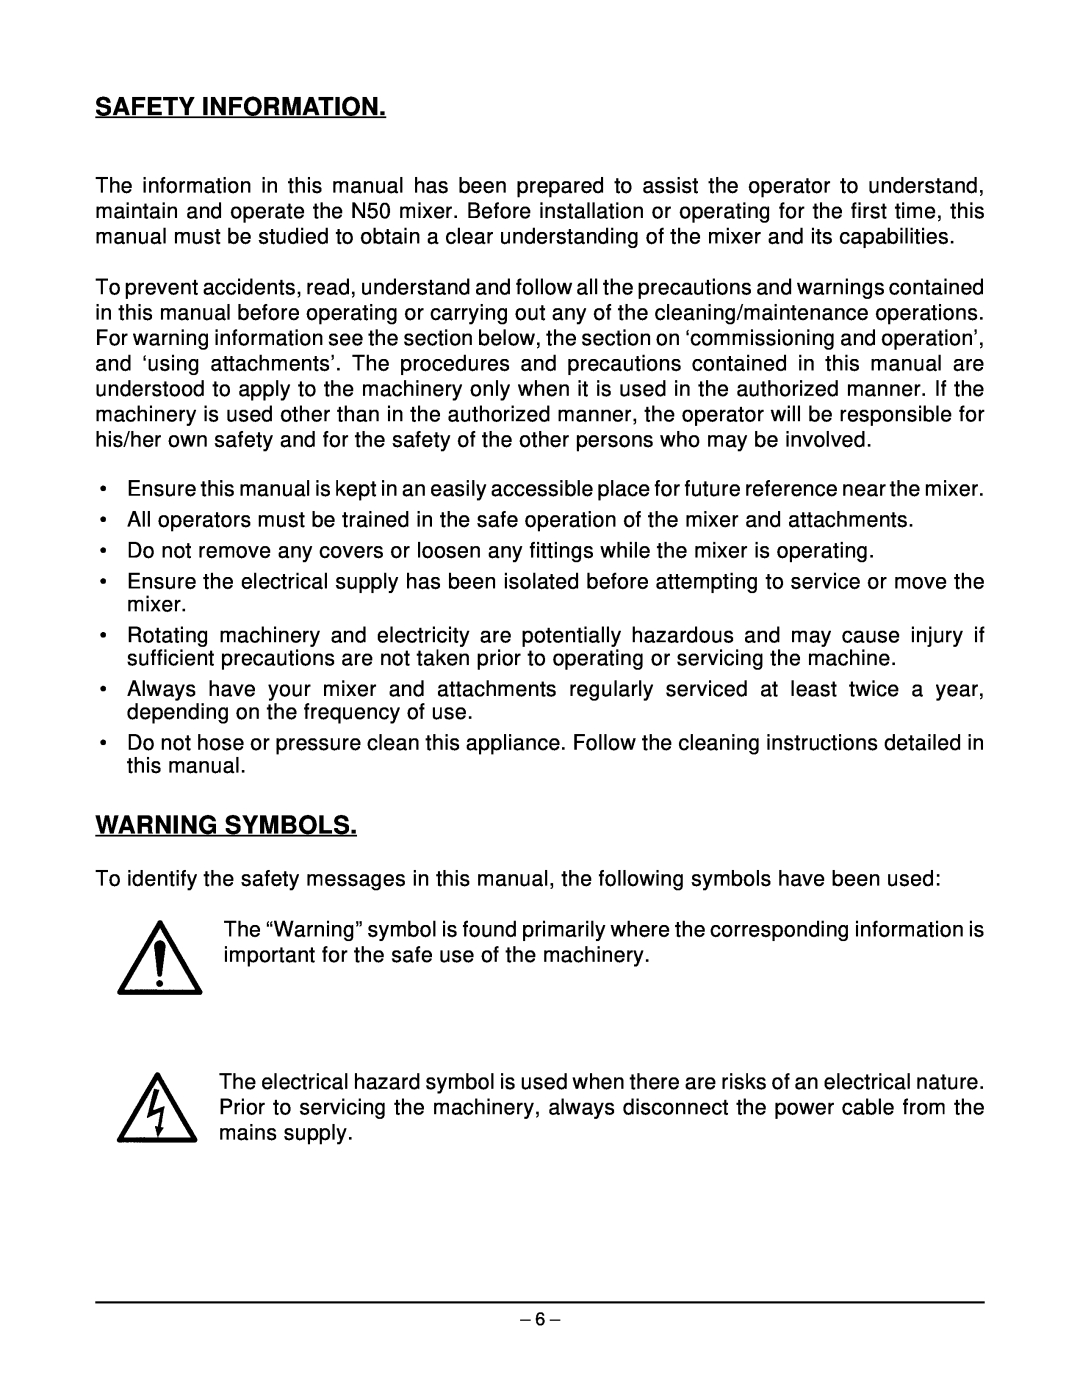 Hobart N50 MIXER manual Safety Information, Warning Symbols 